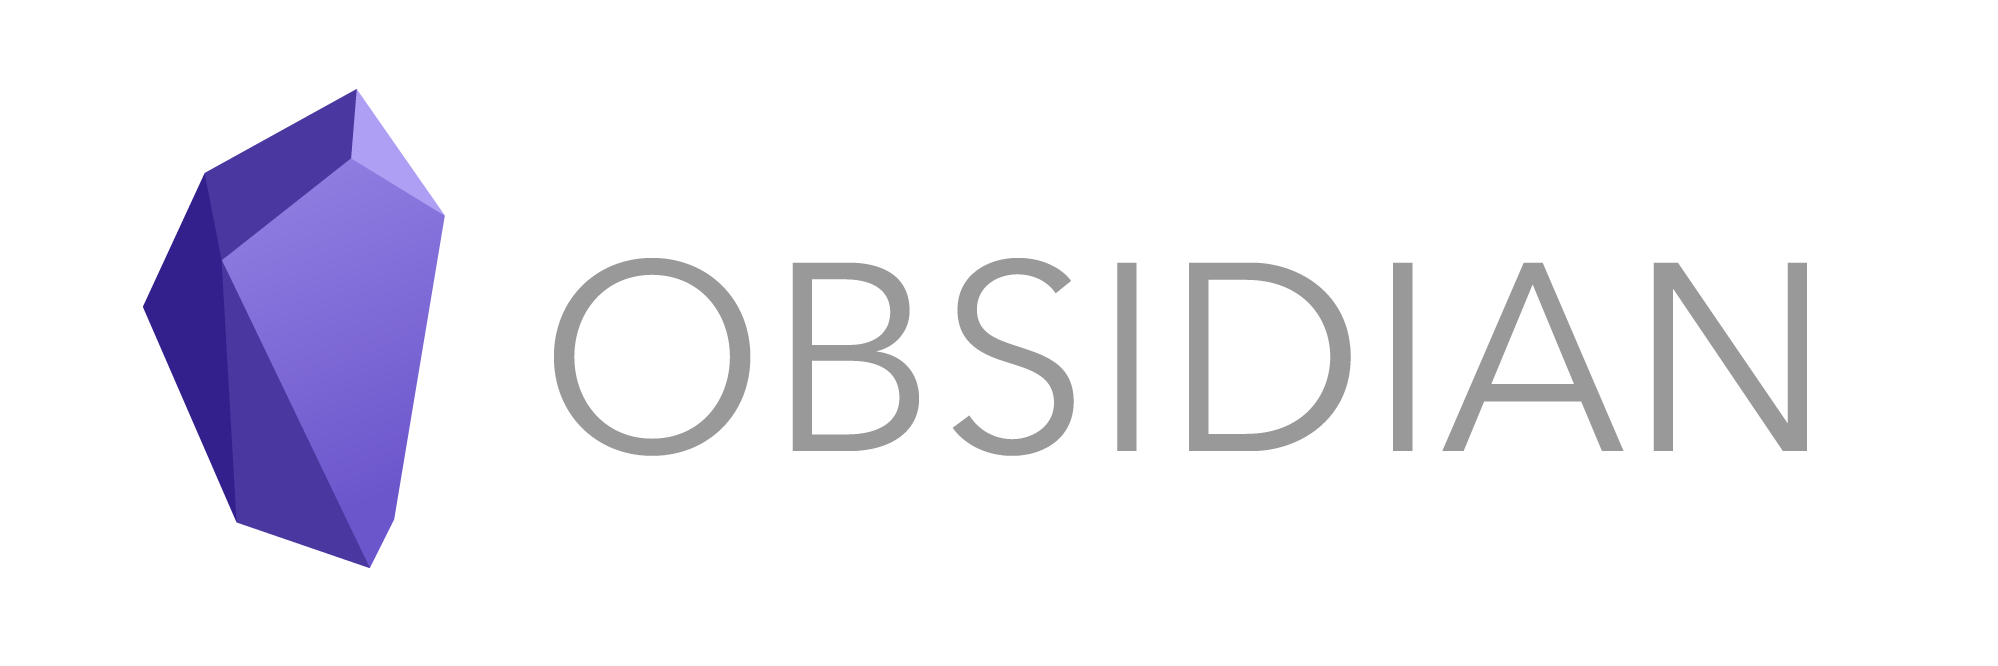 [Obsidian app](https://obsidian.md/)